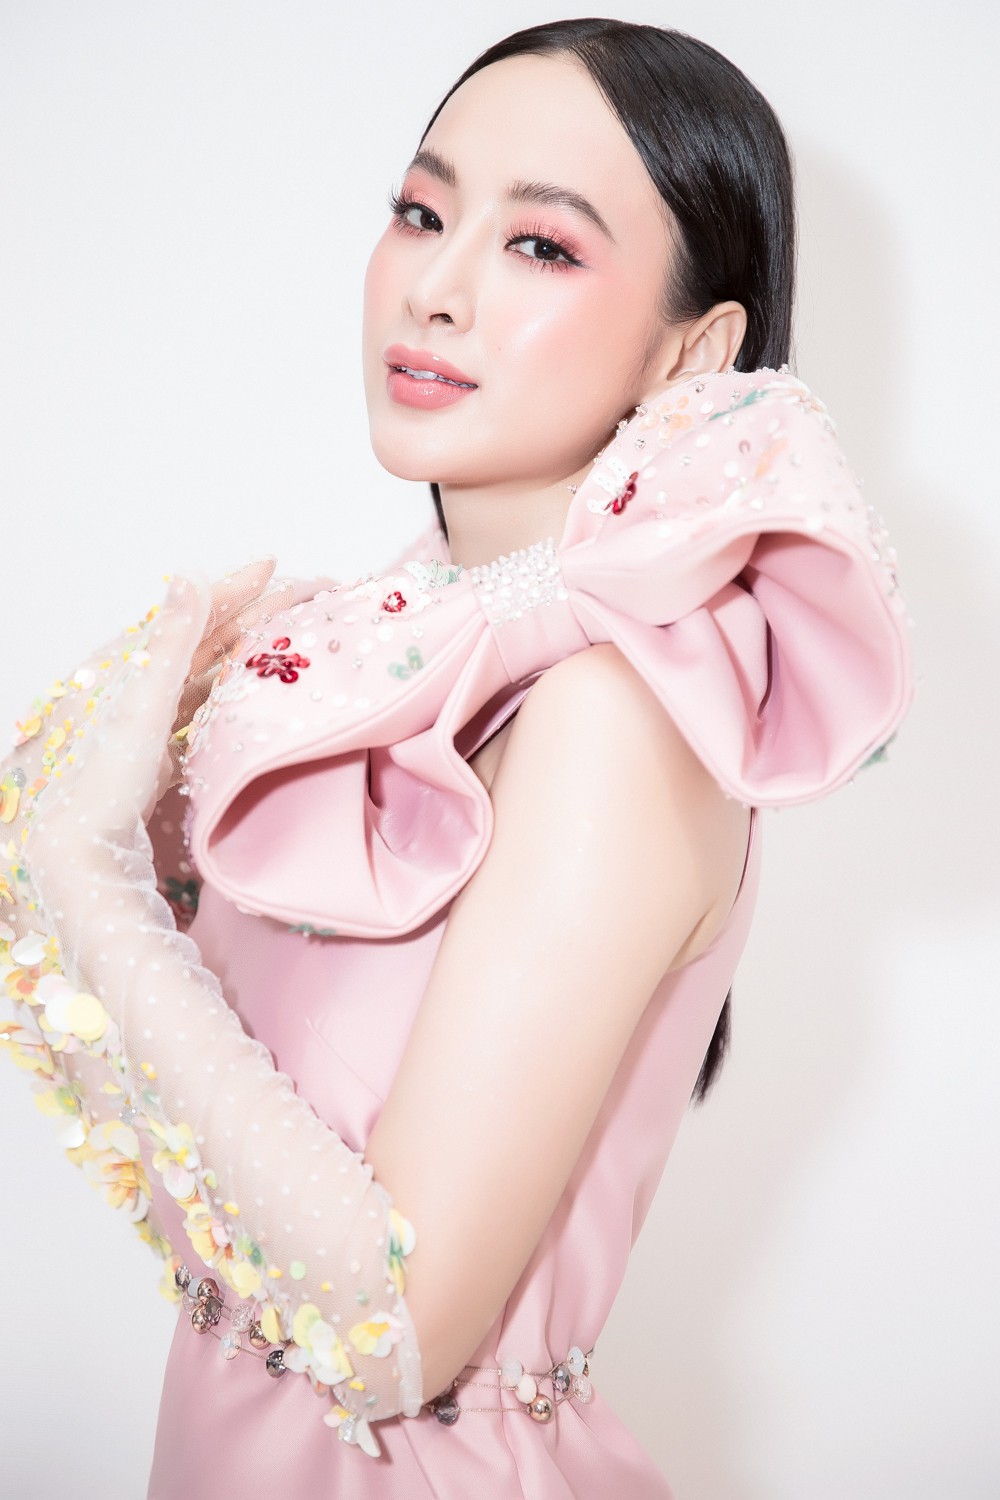 Hết hoá tiểu thư đài các, Angela Phương Trinh lại đổi sang phong cách bánh bèo đầy xinh đẹp - Ảnh 3.